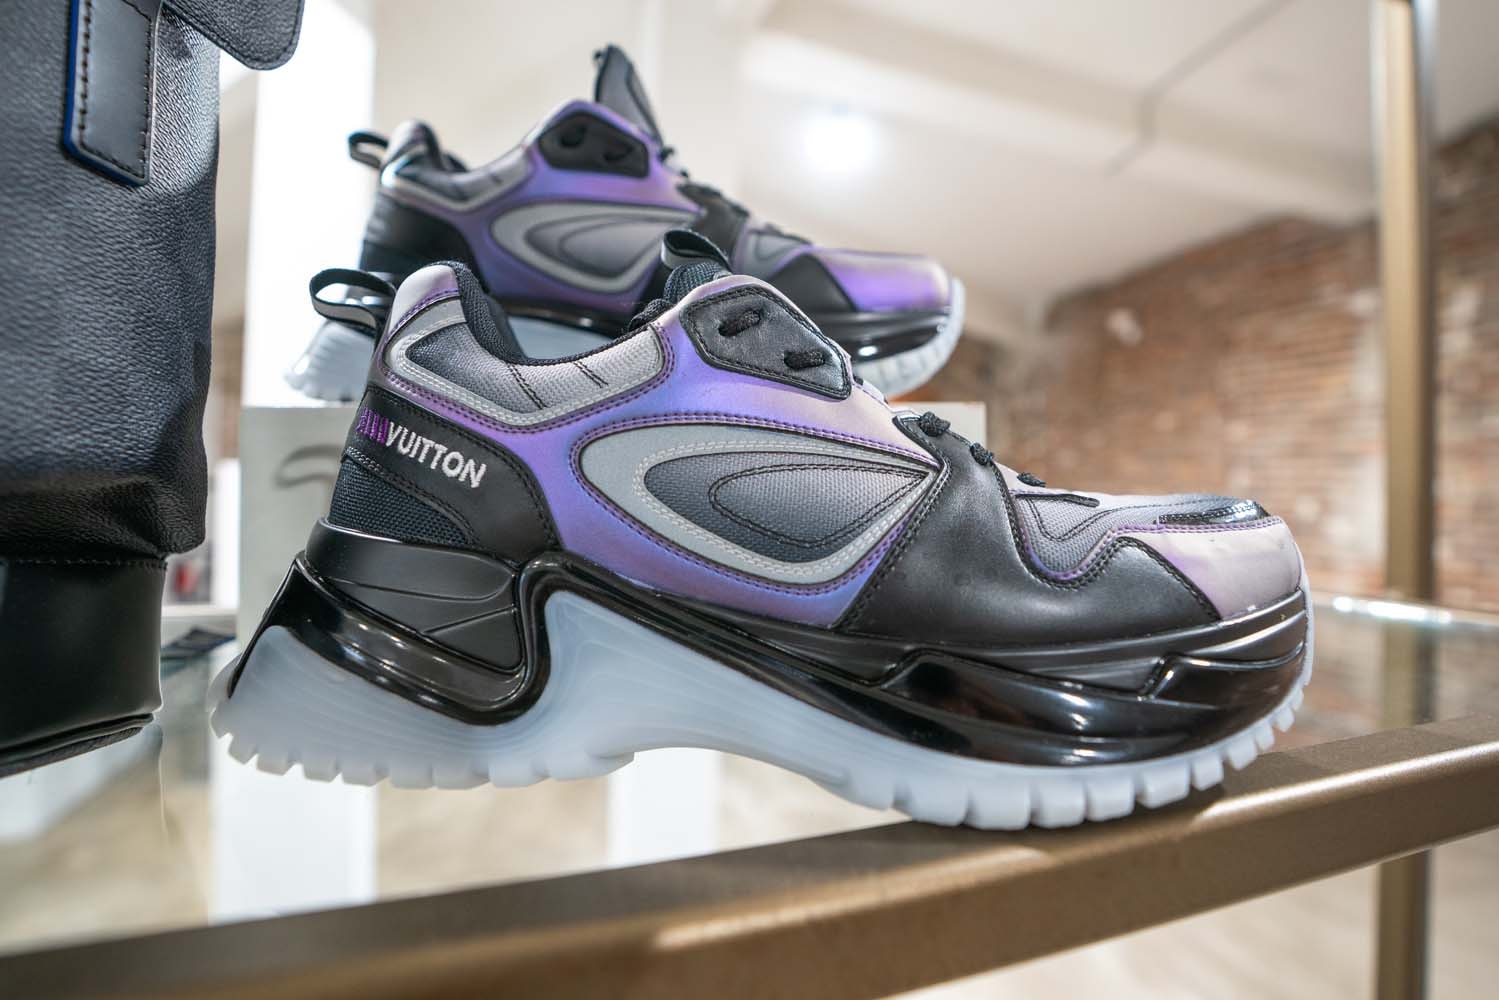 버질 아블로의 루이 비통 2020 봄, 여름 멘즈 프리 컬렉션 미리보기 투명 가방 신발 